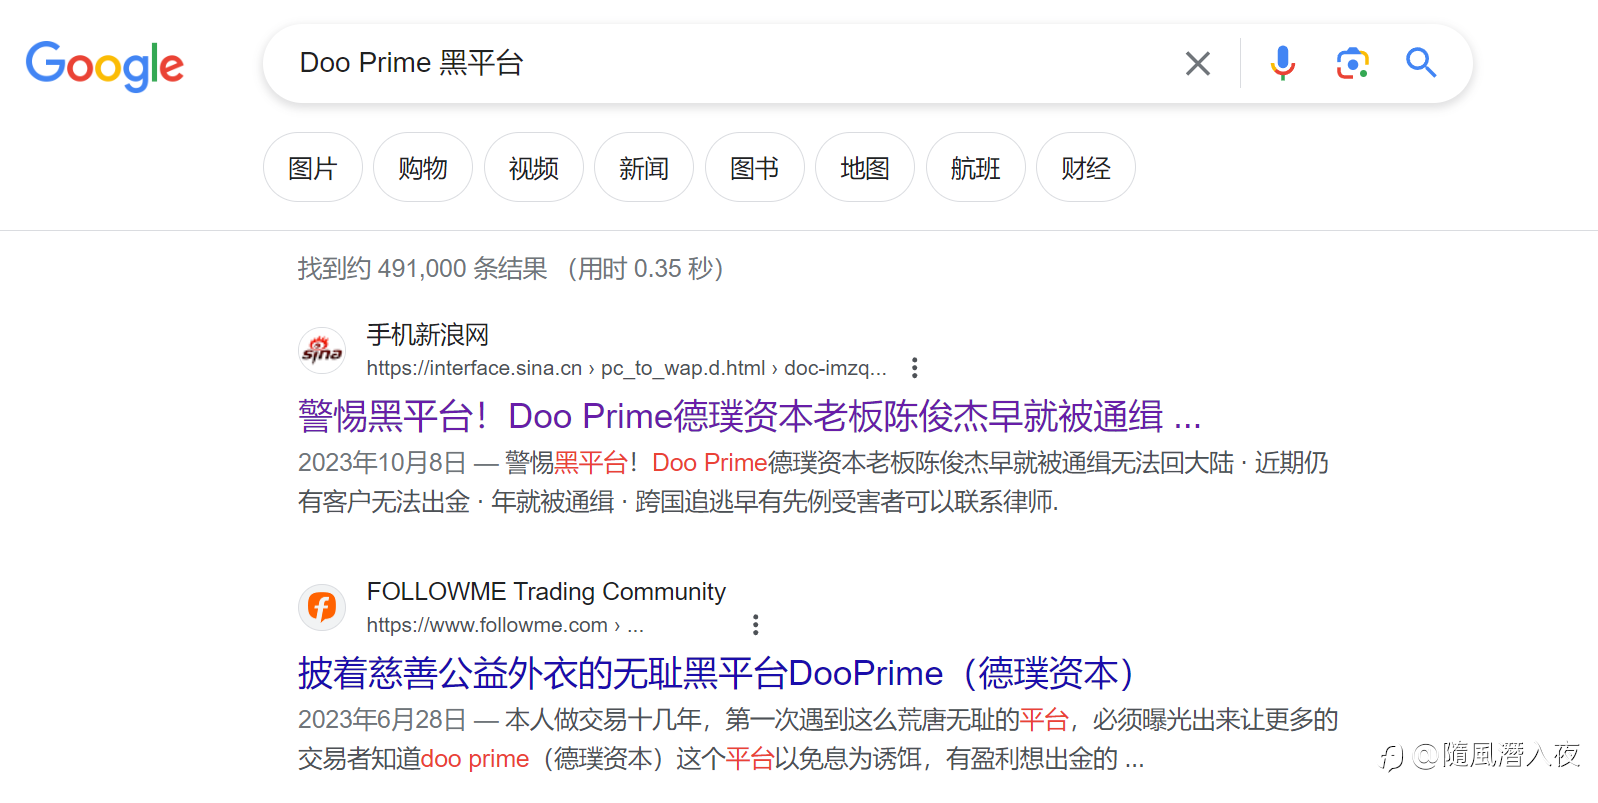 Doo prime 无监管平台可以随意封客户账户,不让客户出金